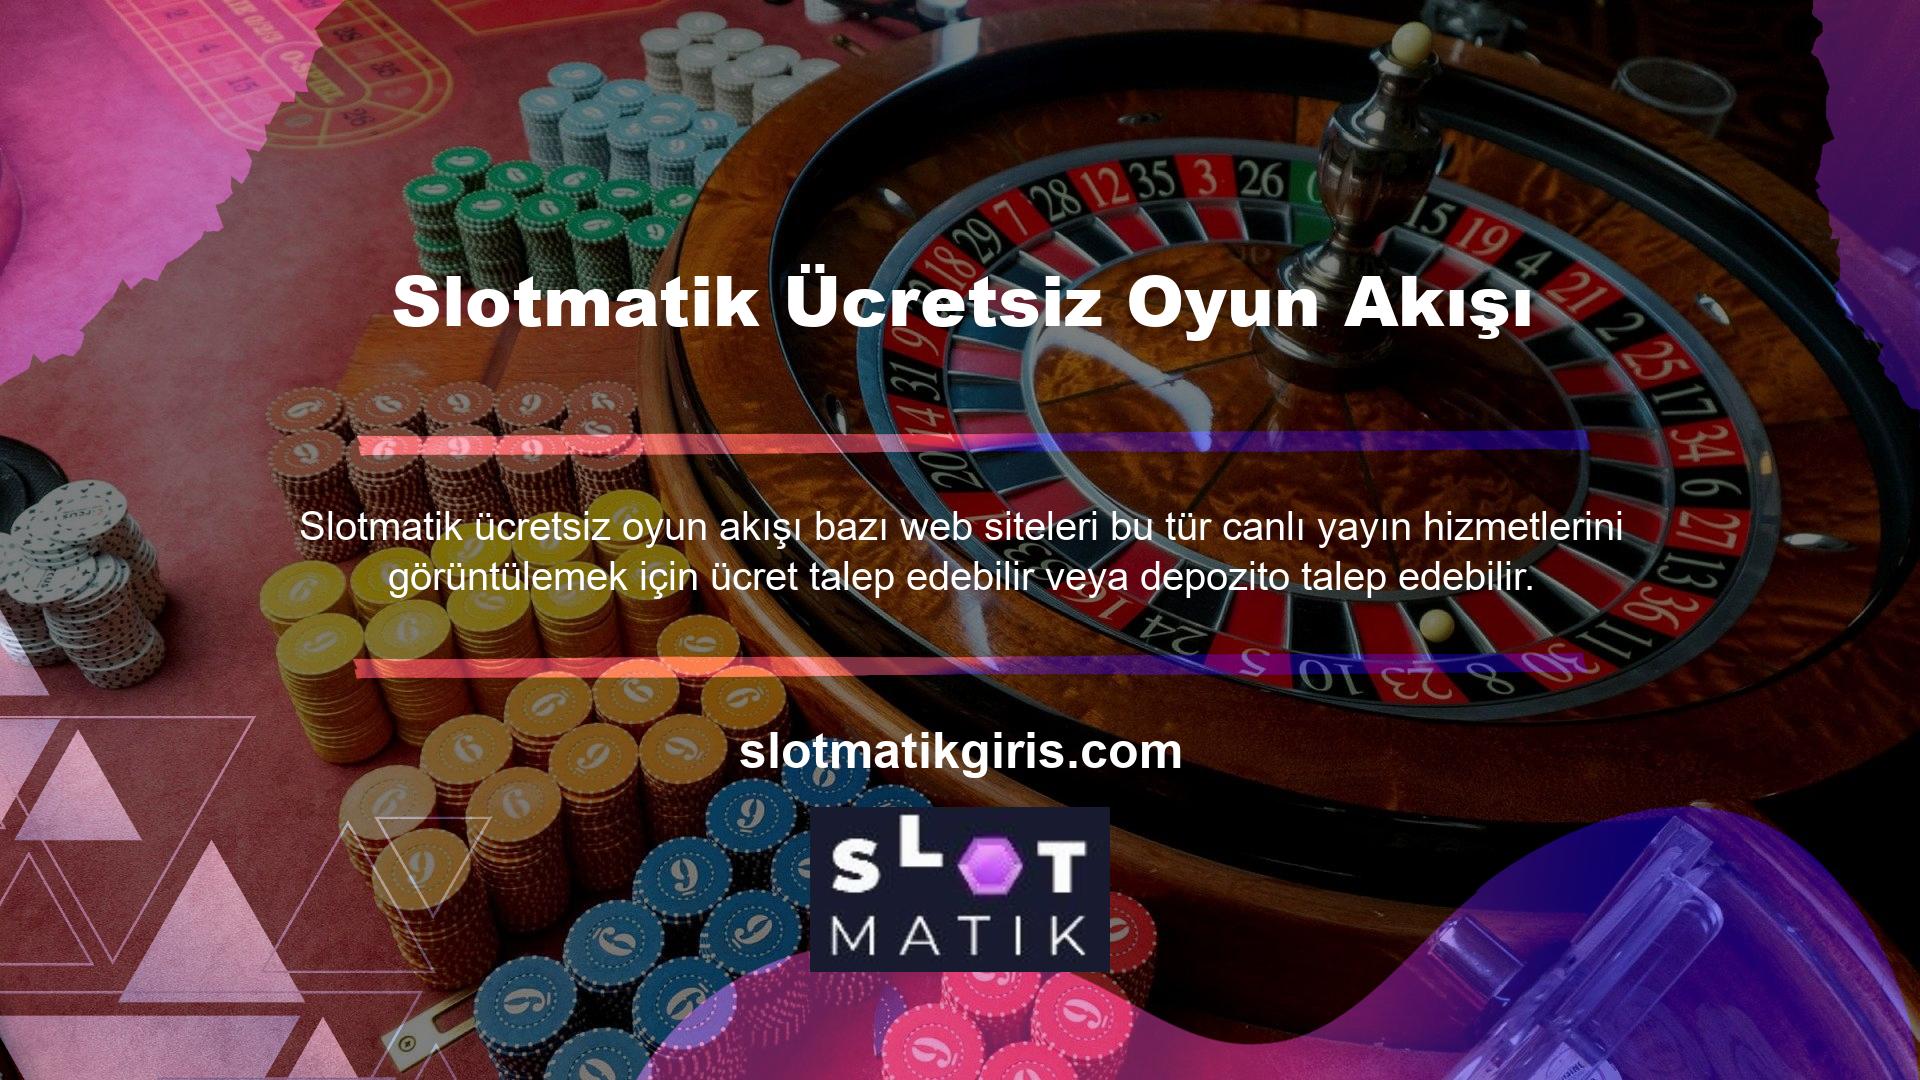 Slotmatik Ücretsiz Oyun Yayını Ancak oyunların ücretsiz yayınının Slotmatik tarafından sağlandığı açıktır